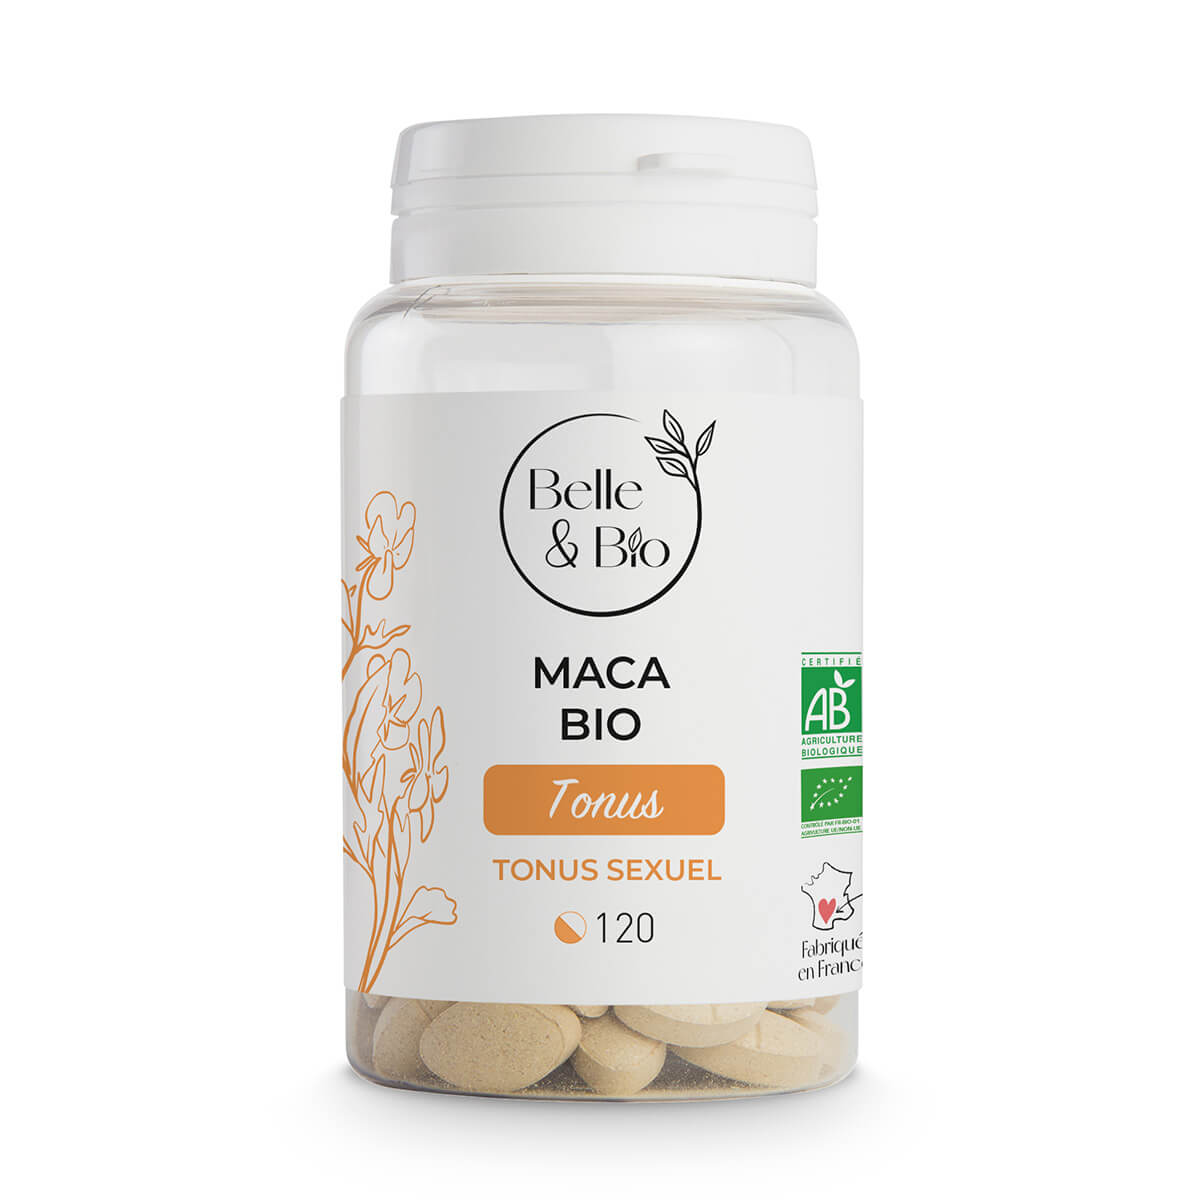 Maca Bio (120 Comprimés) - Tonus sexuel